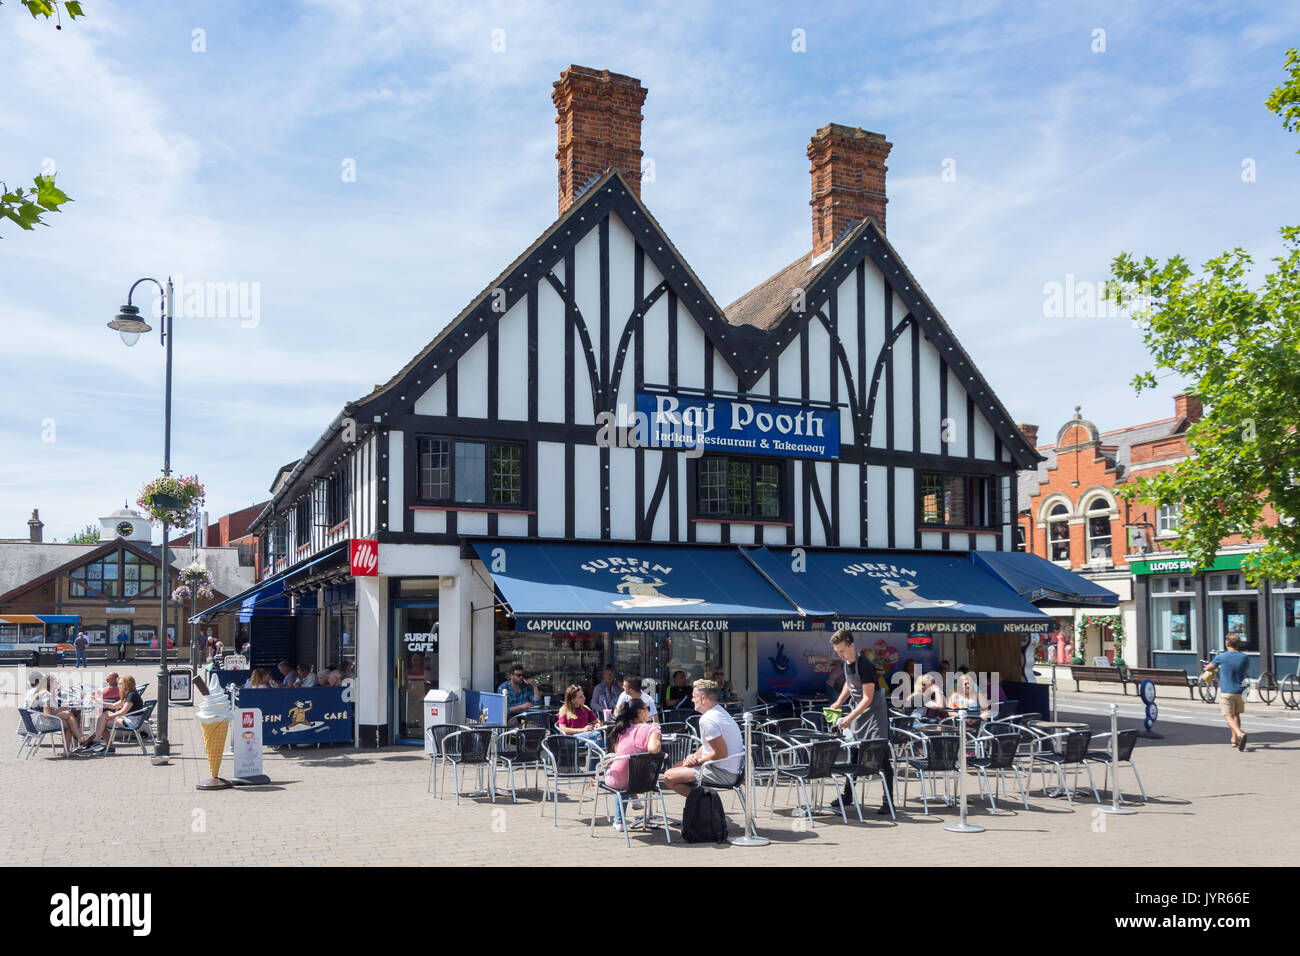 Pavement cafe, Market House, Market Square, Biggleswade, Bedfordshire, England, United Kingdom Stock Photo